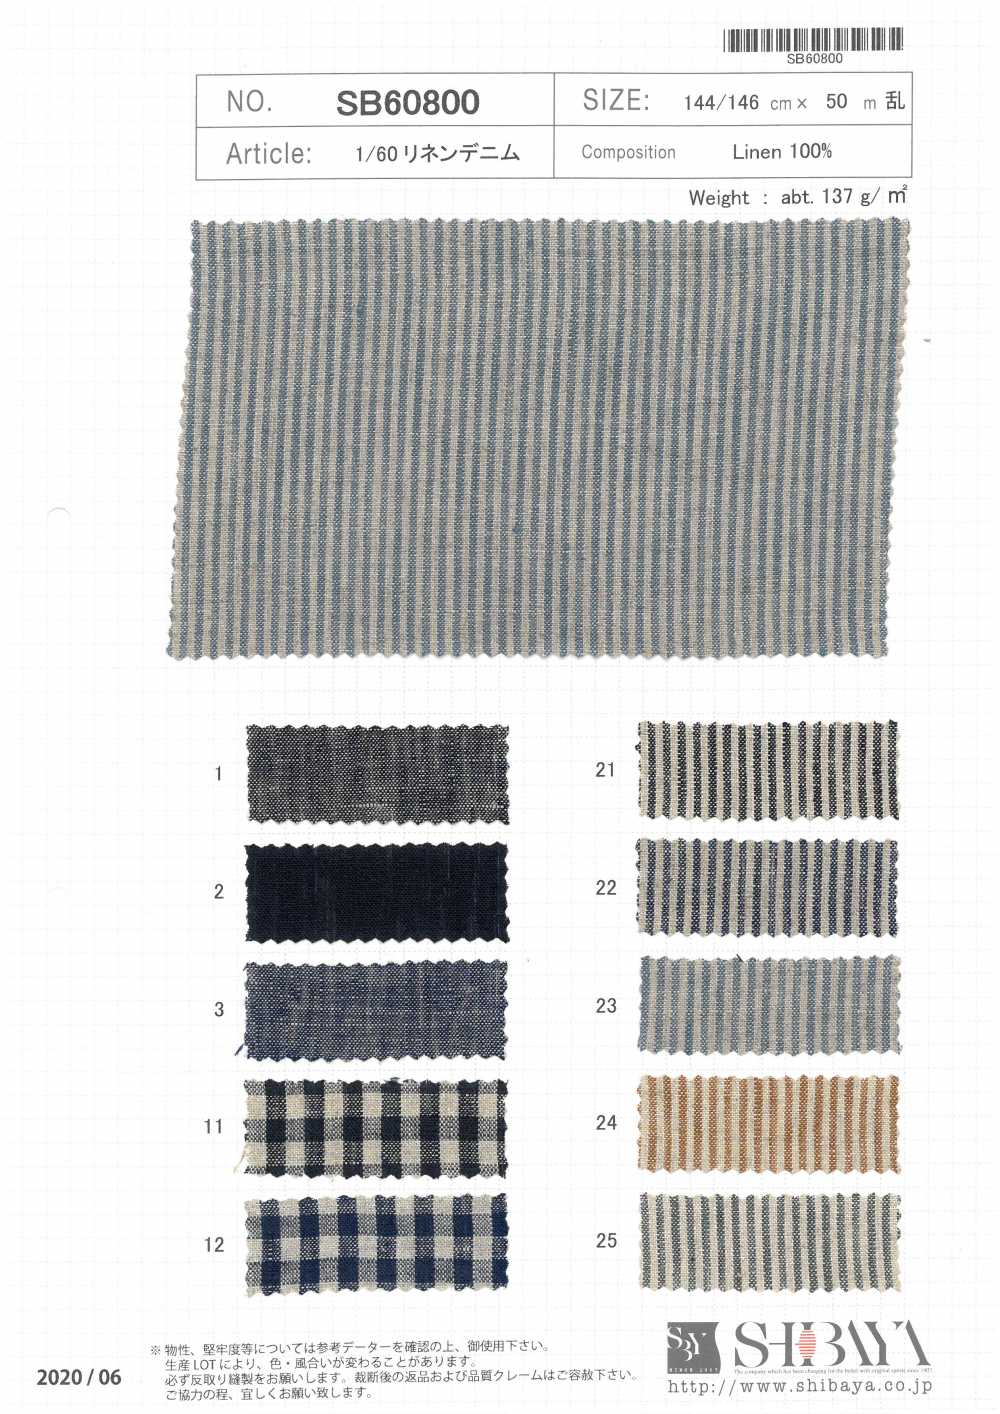 SB60800 1/60 Linen Denim[Textile / Fabric] SHIBAYA